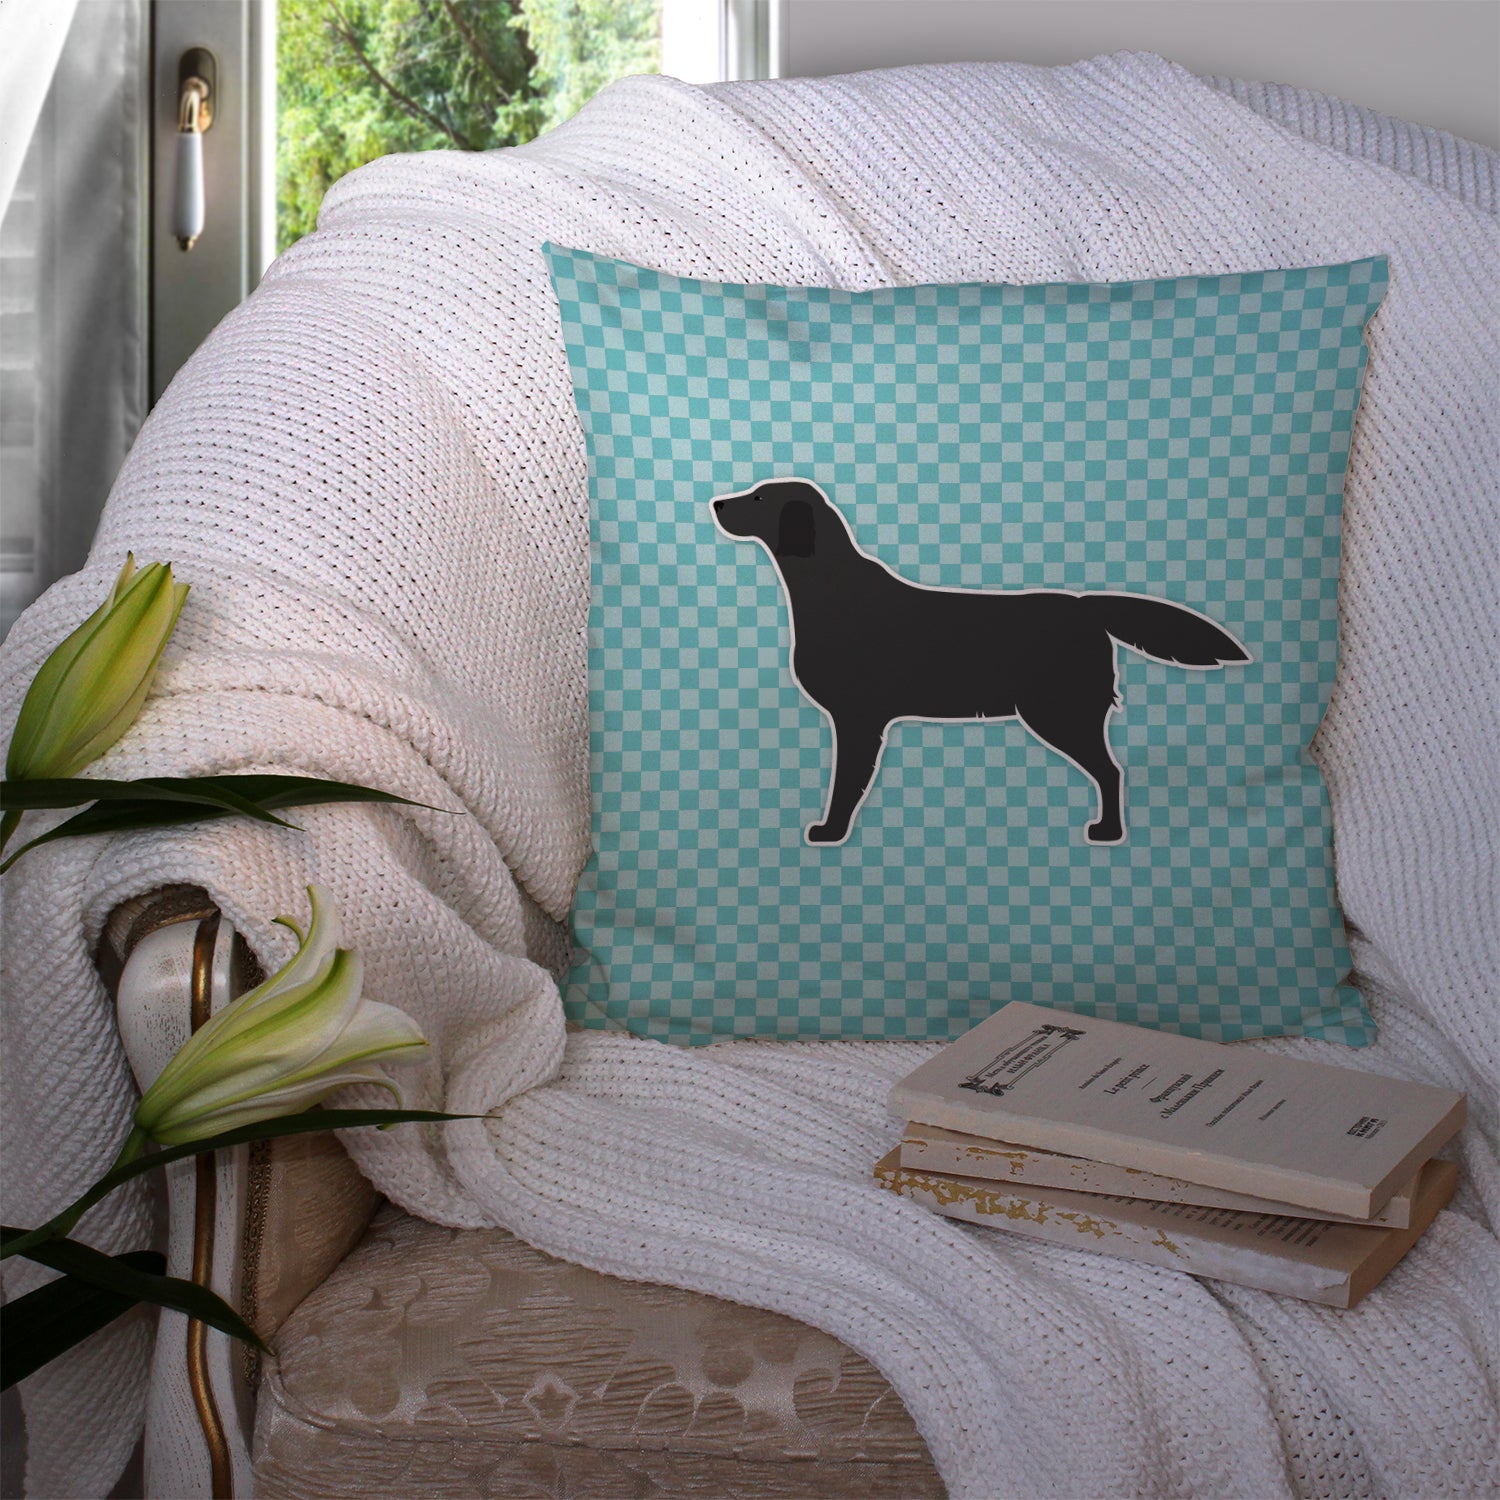 Black Labrador Retriever  Checkerboard Blue Fabric Decorative Pillow BB3708PW1414 - the-store.com